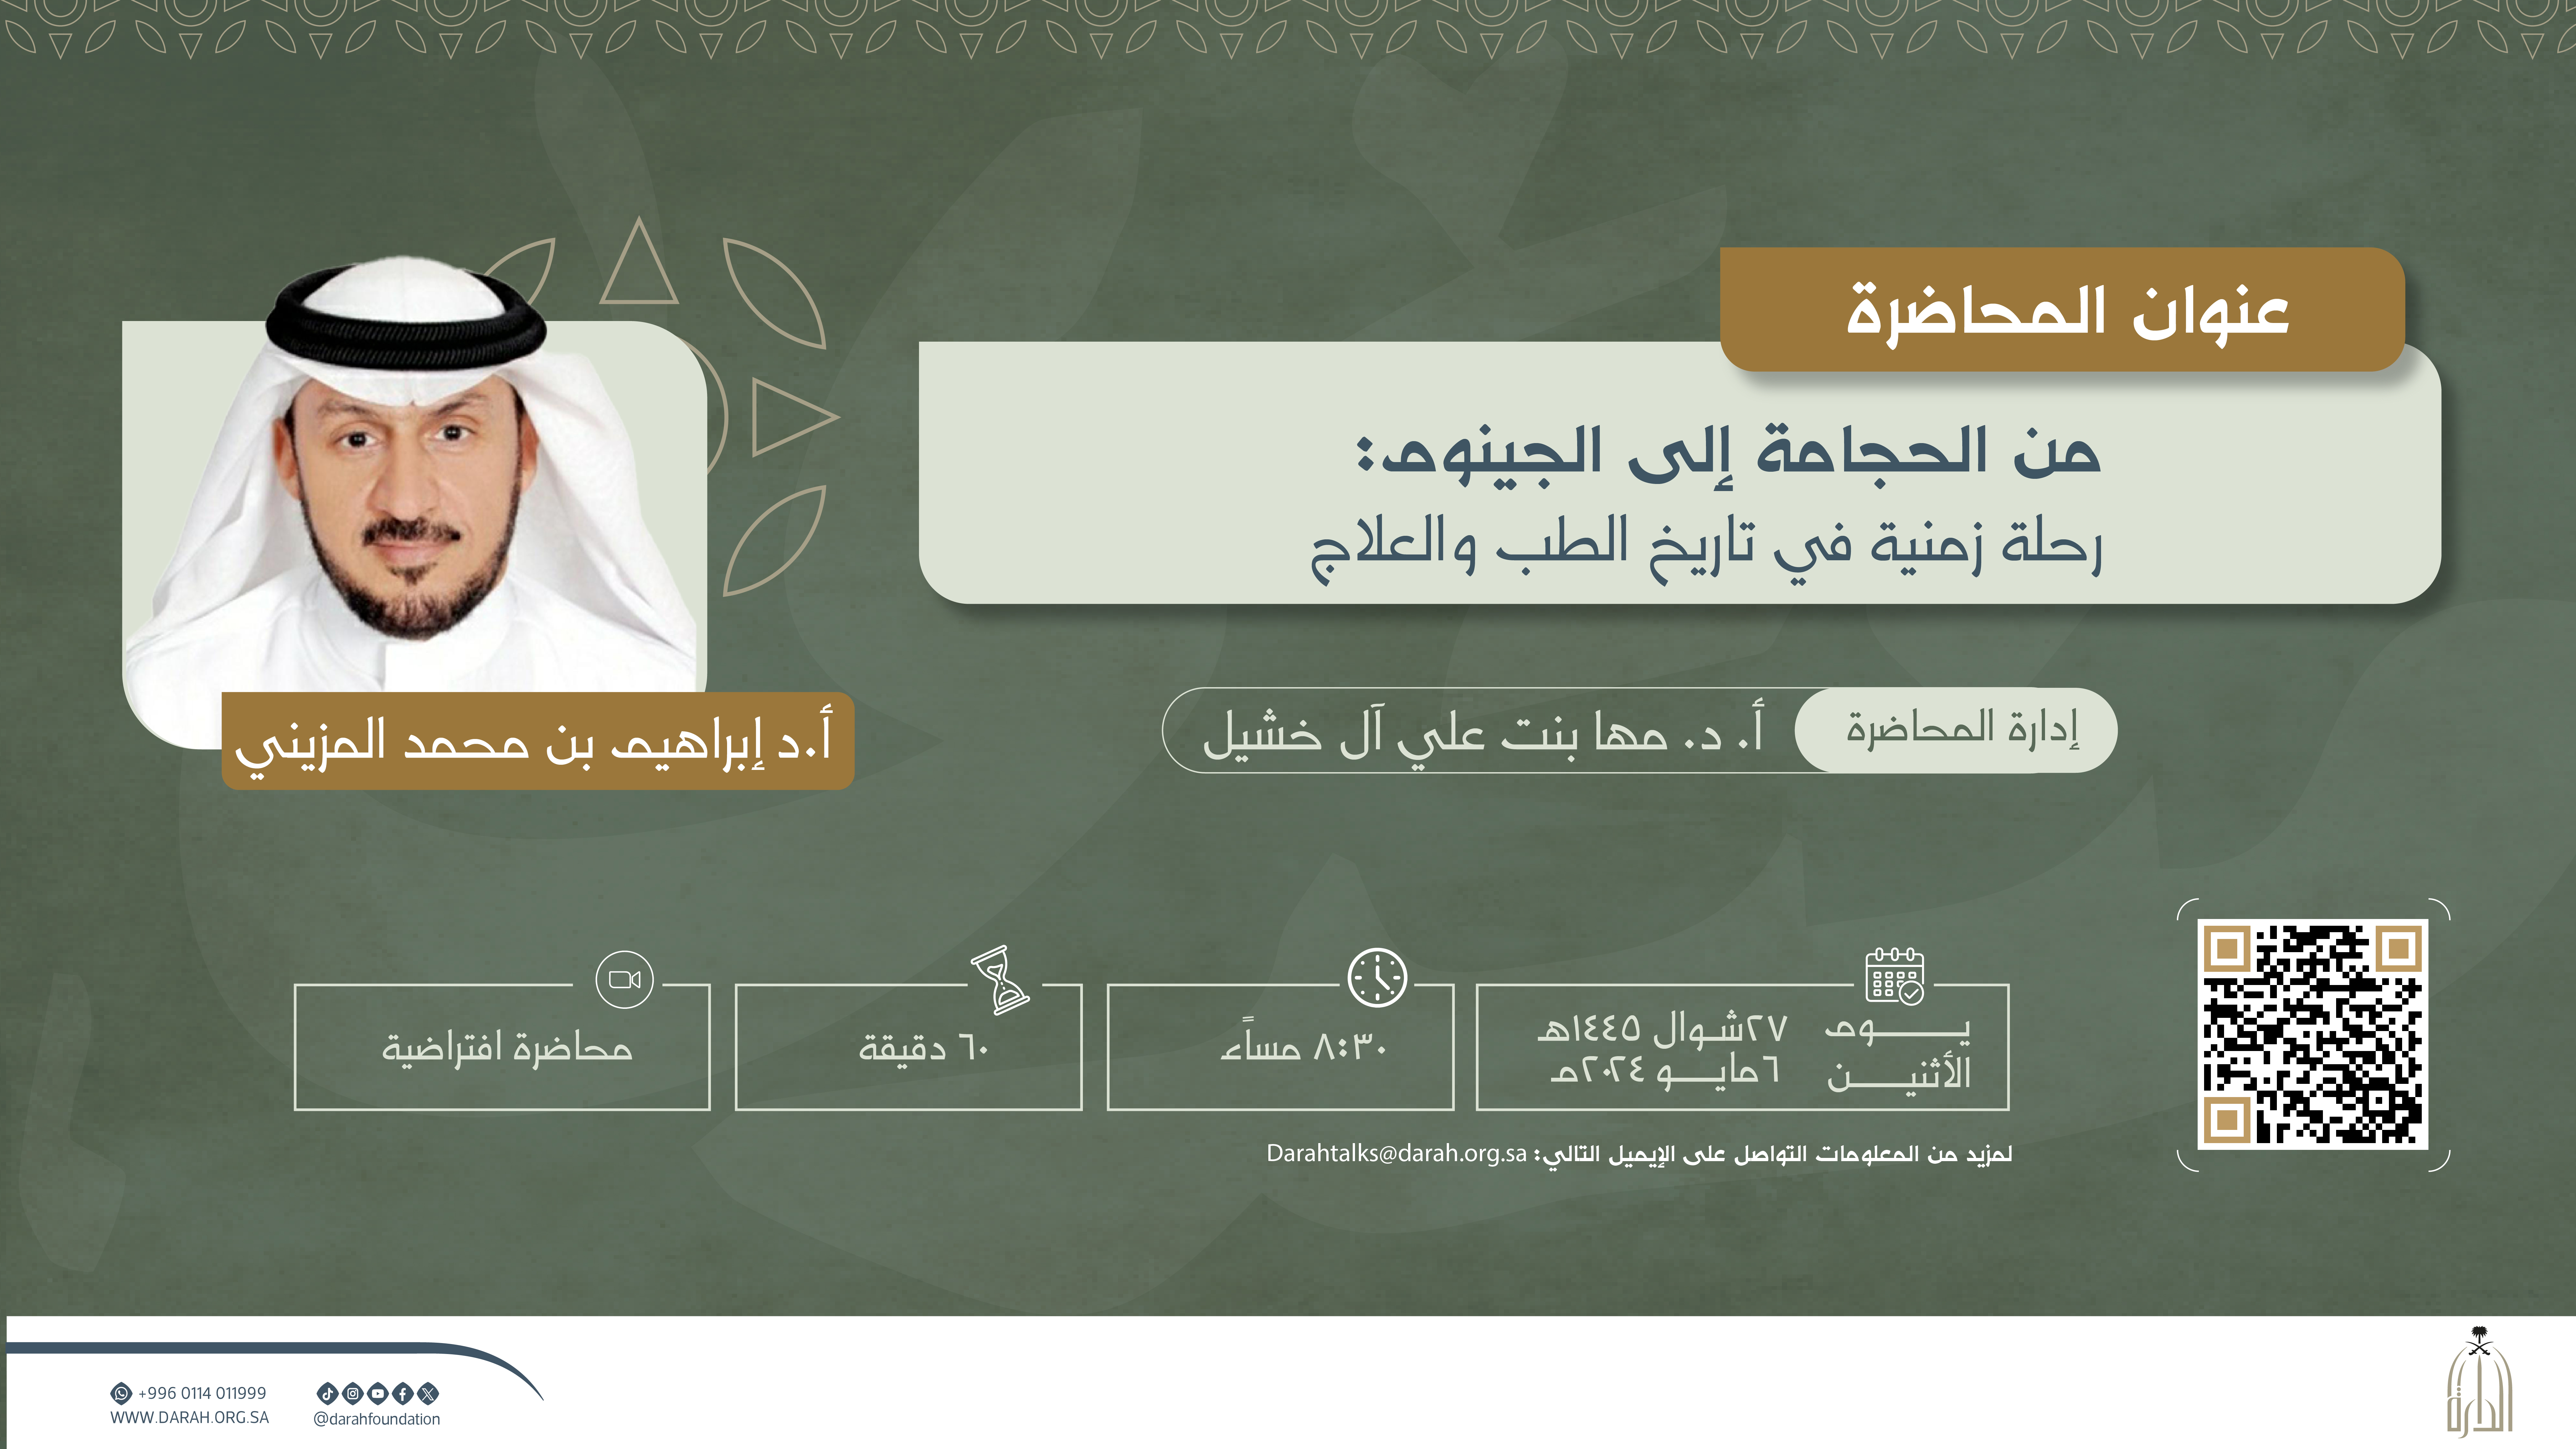 دارة الملك عبدالعزيز تنظم محاضرة افتراضية عن تطور الطب من الحجامة إلى الجينوم